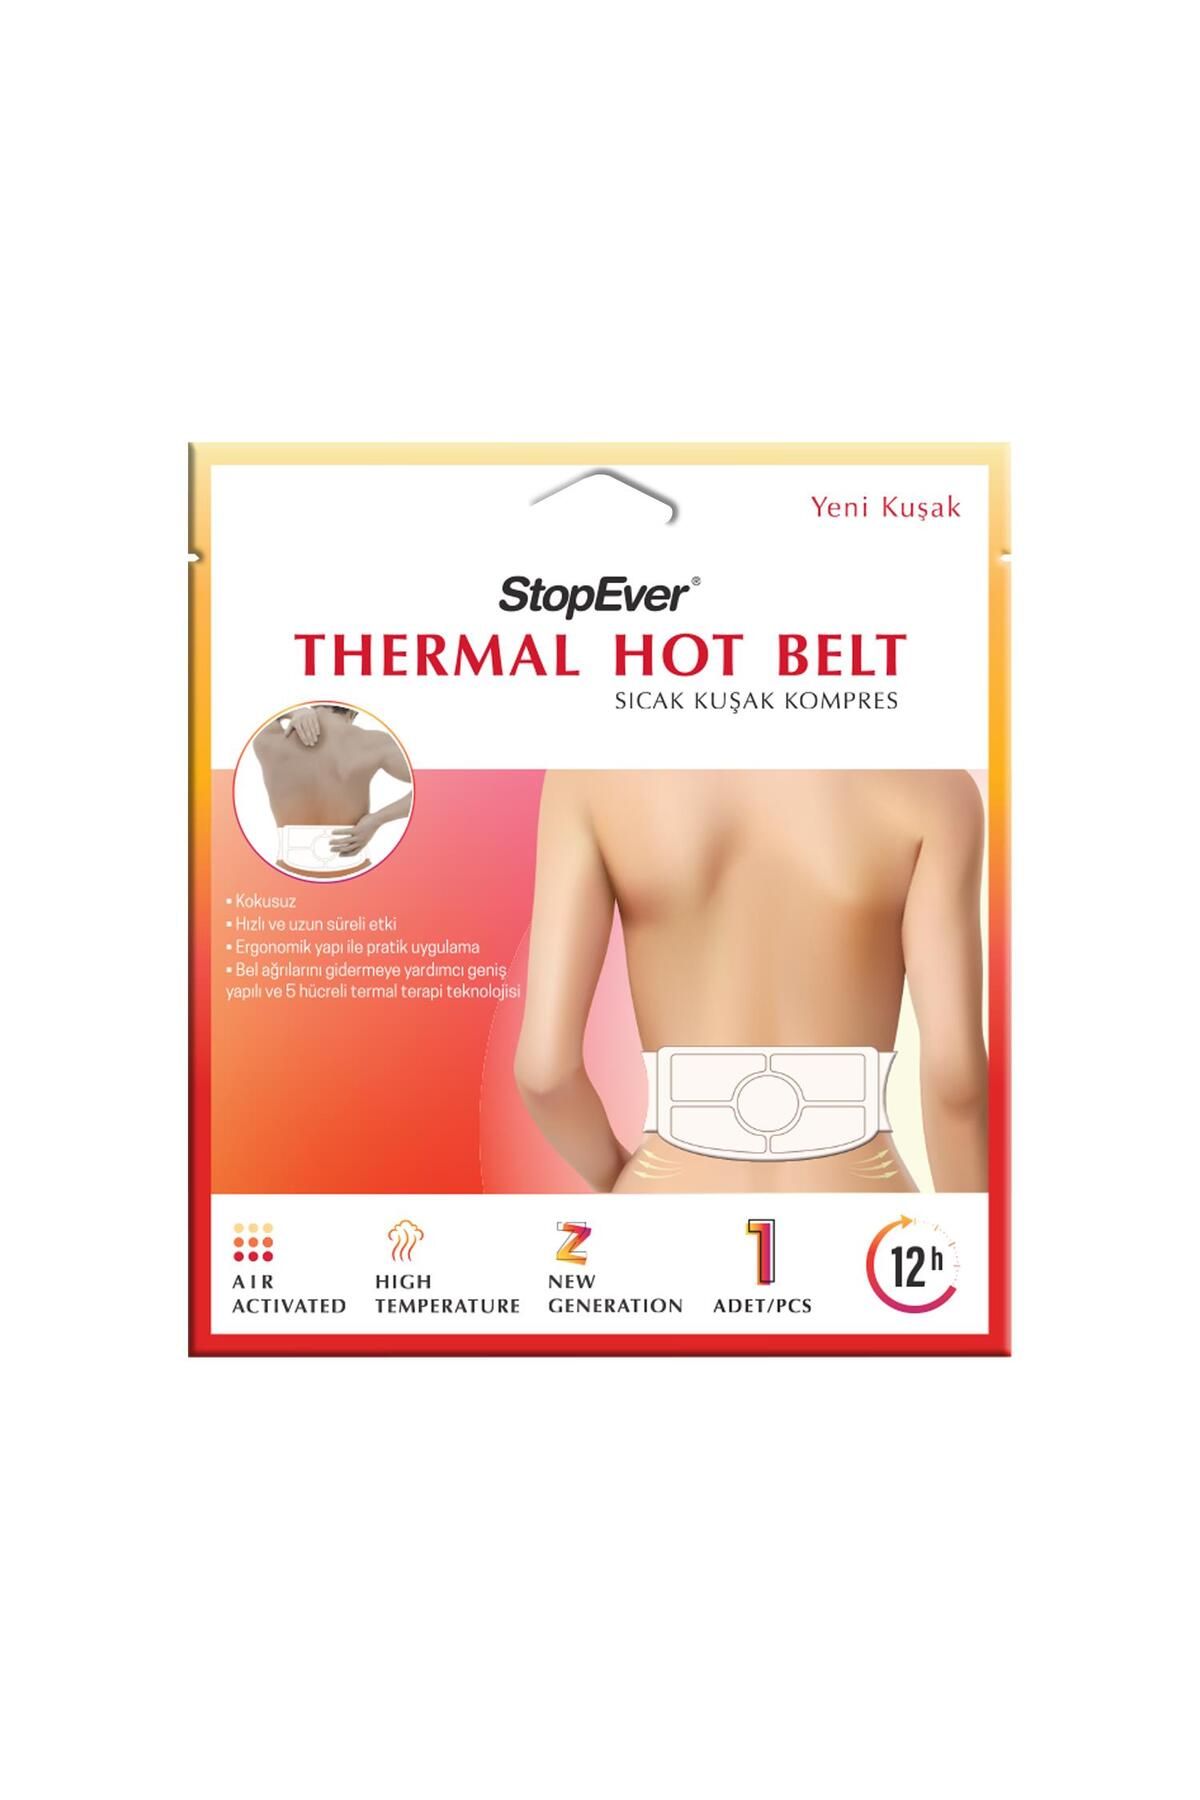 StopEver Thermal Hot Belt Sıcak Kuşak Kompres